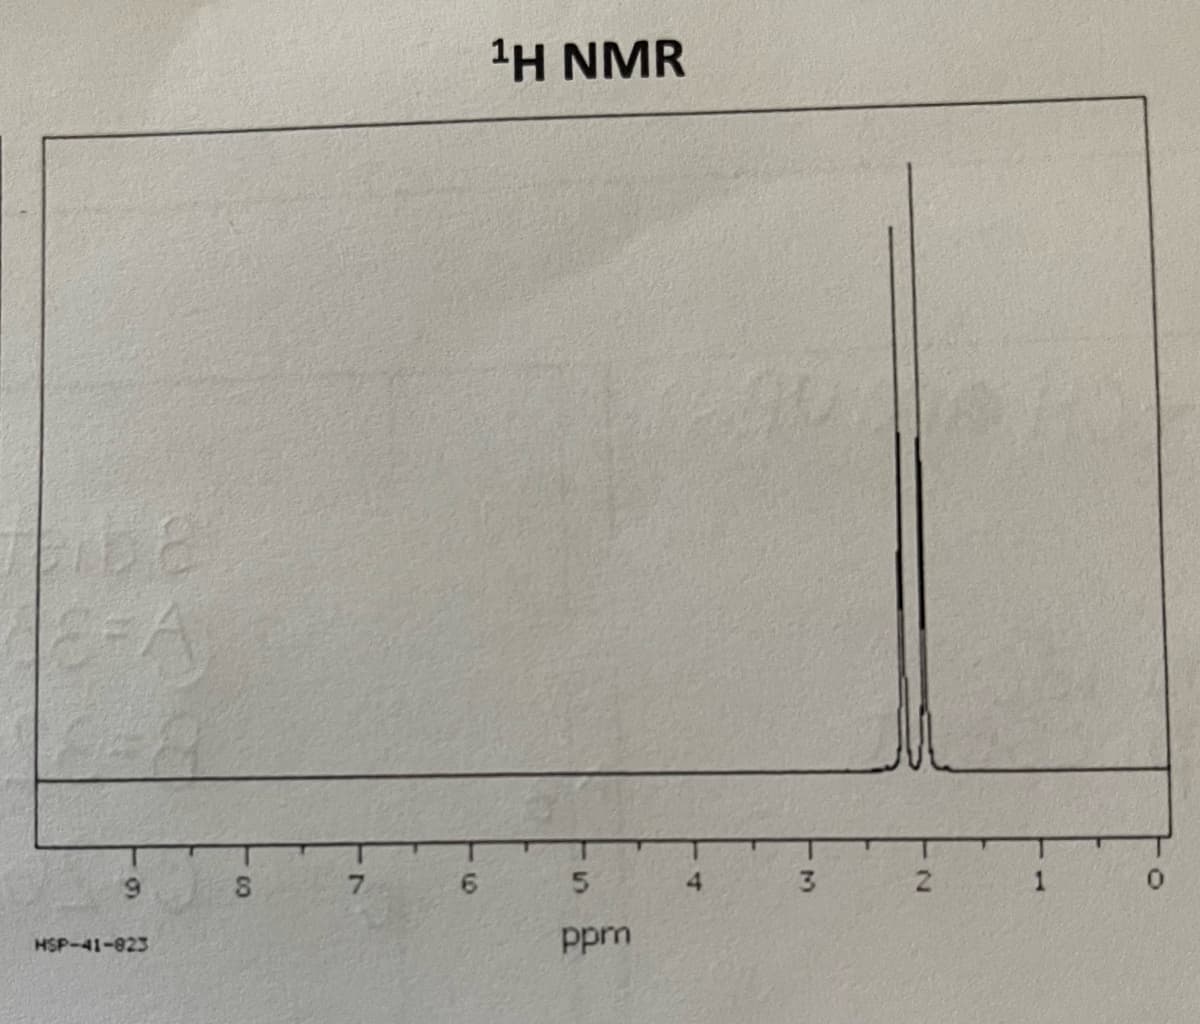 6-8
9
HSP-41-823
8
7
6
¹H NMR
5
ppm
4
3
2
0